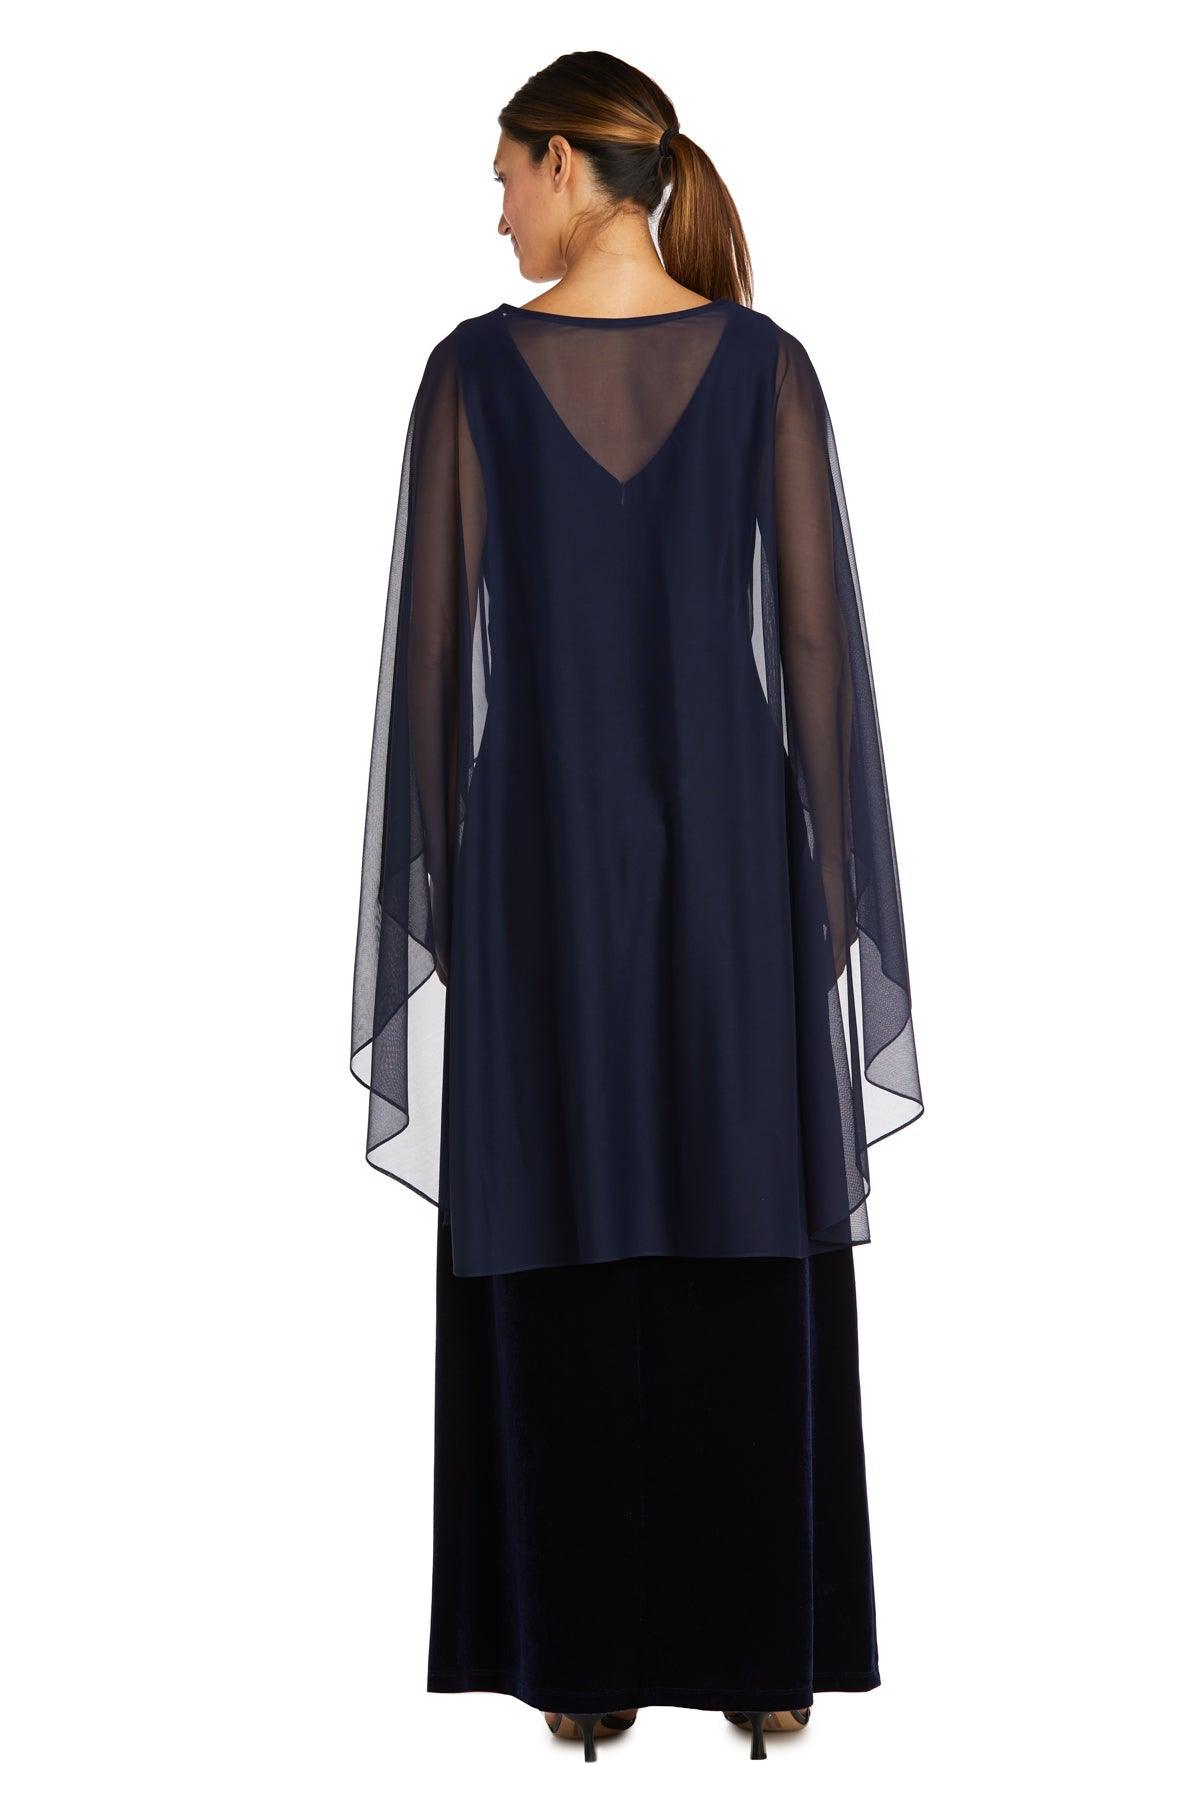 R&M Richards Long Formal Petite Cape Dress 2668P - The Dress Outlet